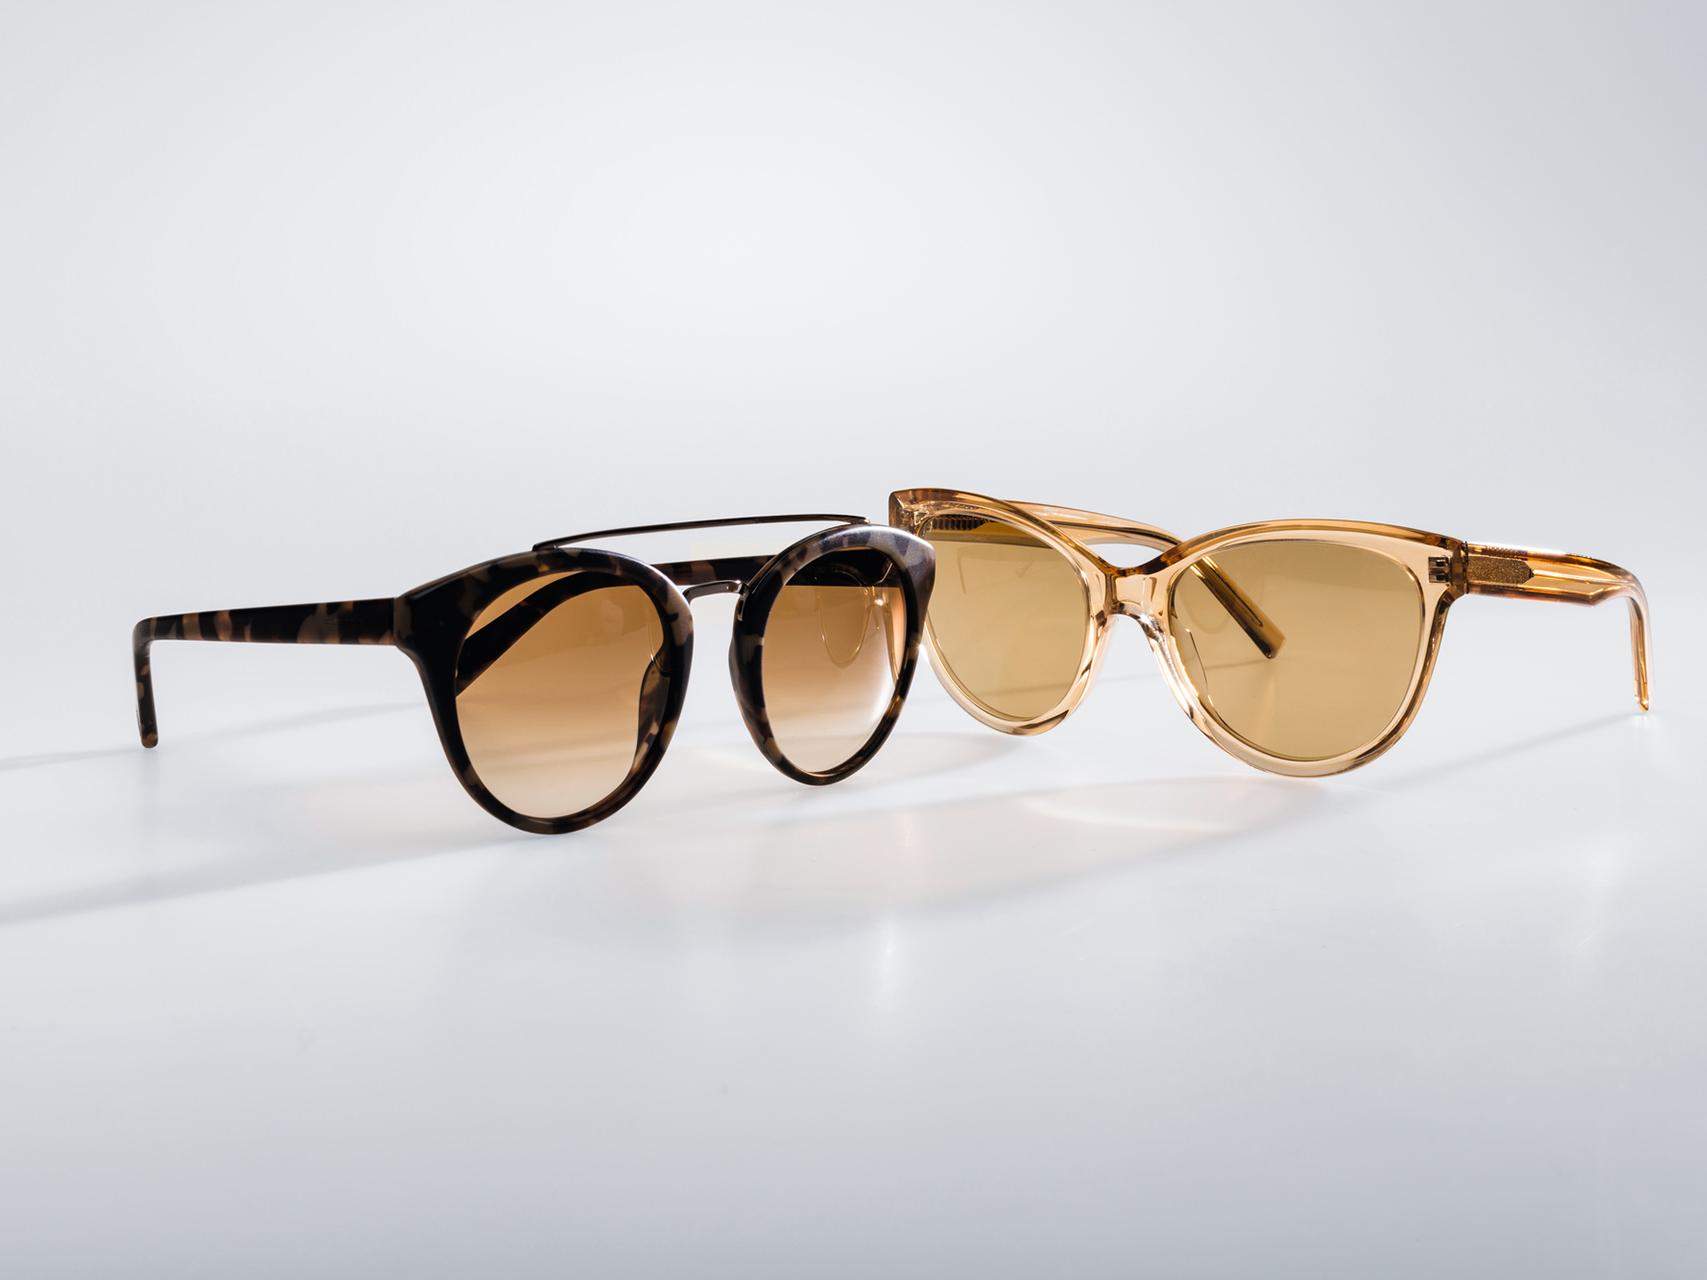 Abbildung von zwei Sonnenbrillen, eine mit leichter unifarbener Tönung und eine mit leichter, heller Tönung. 